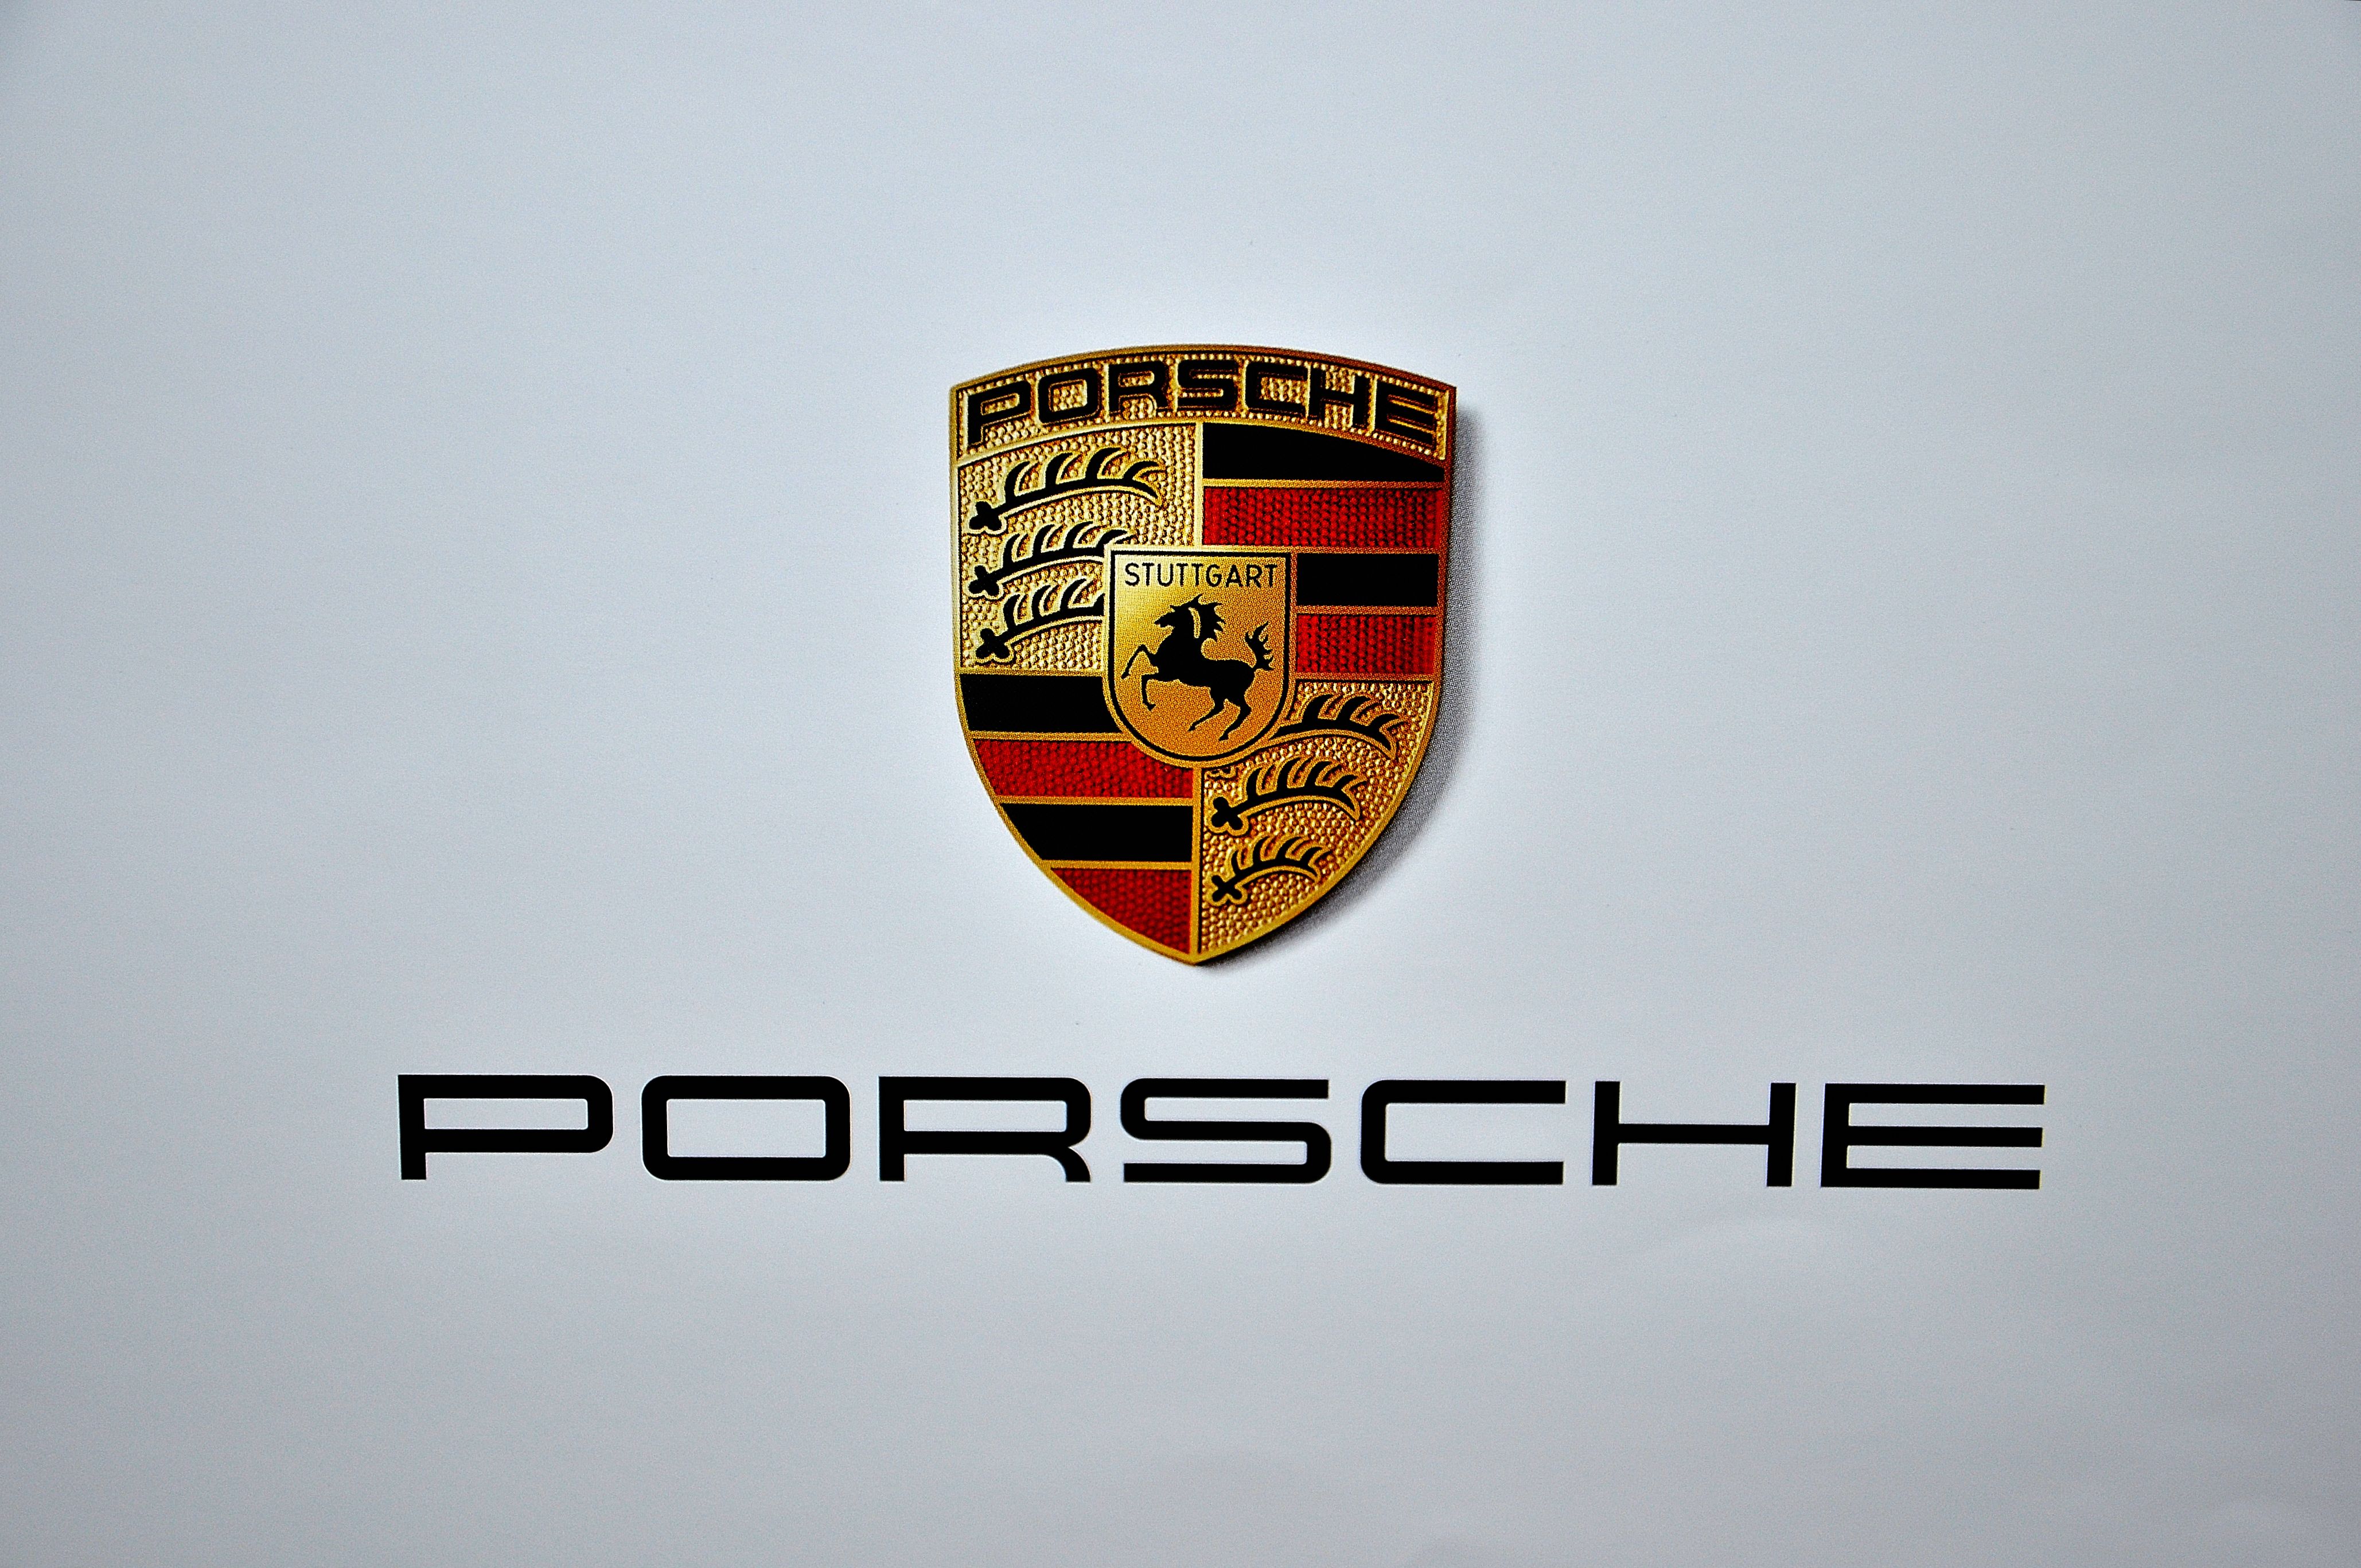 Porsche Emblem Wallpaper Porsche logo by jube96